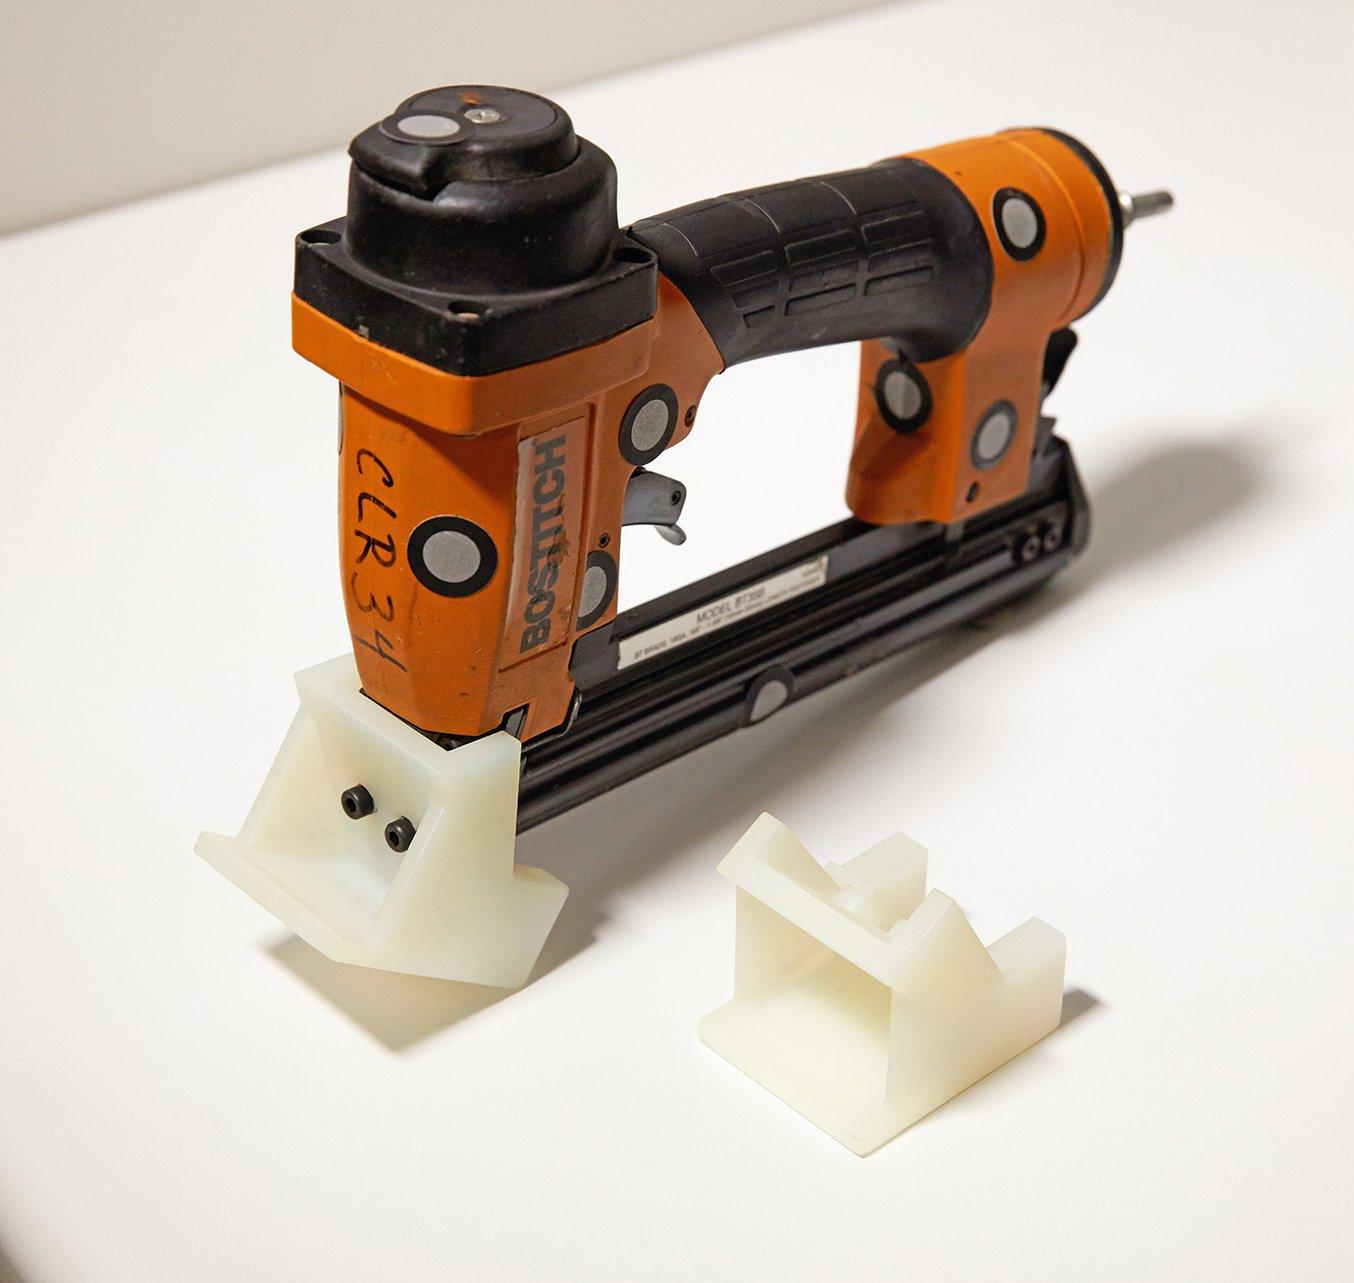 Gli ingegneri di prodotto di Ashley Furniture hanno sviluppato e stampato in 3D adattatori per gli strumenti personalizzati, in modo da garantire che chiodi e cambrette si trovino sempre nella stessa posizione negli armadi. L'adattatore per strumenti raffi